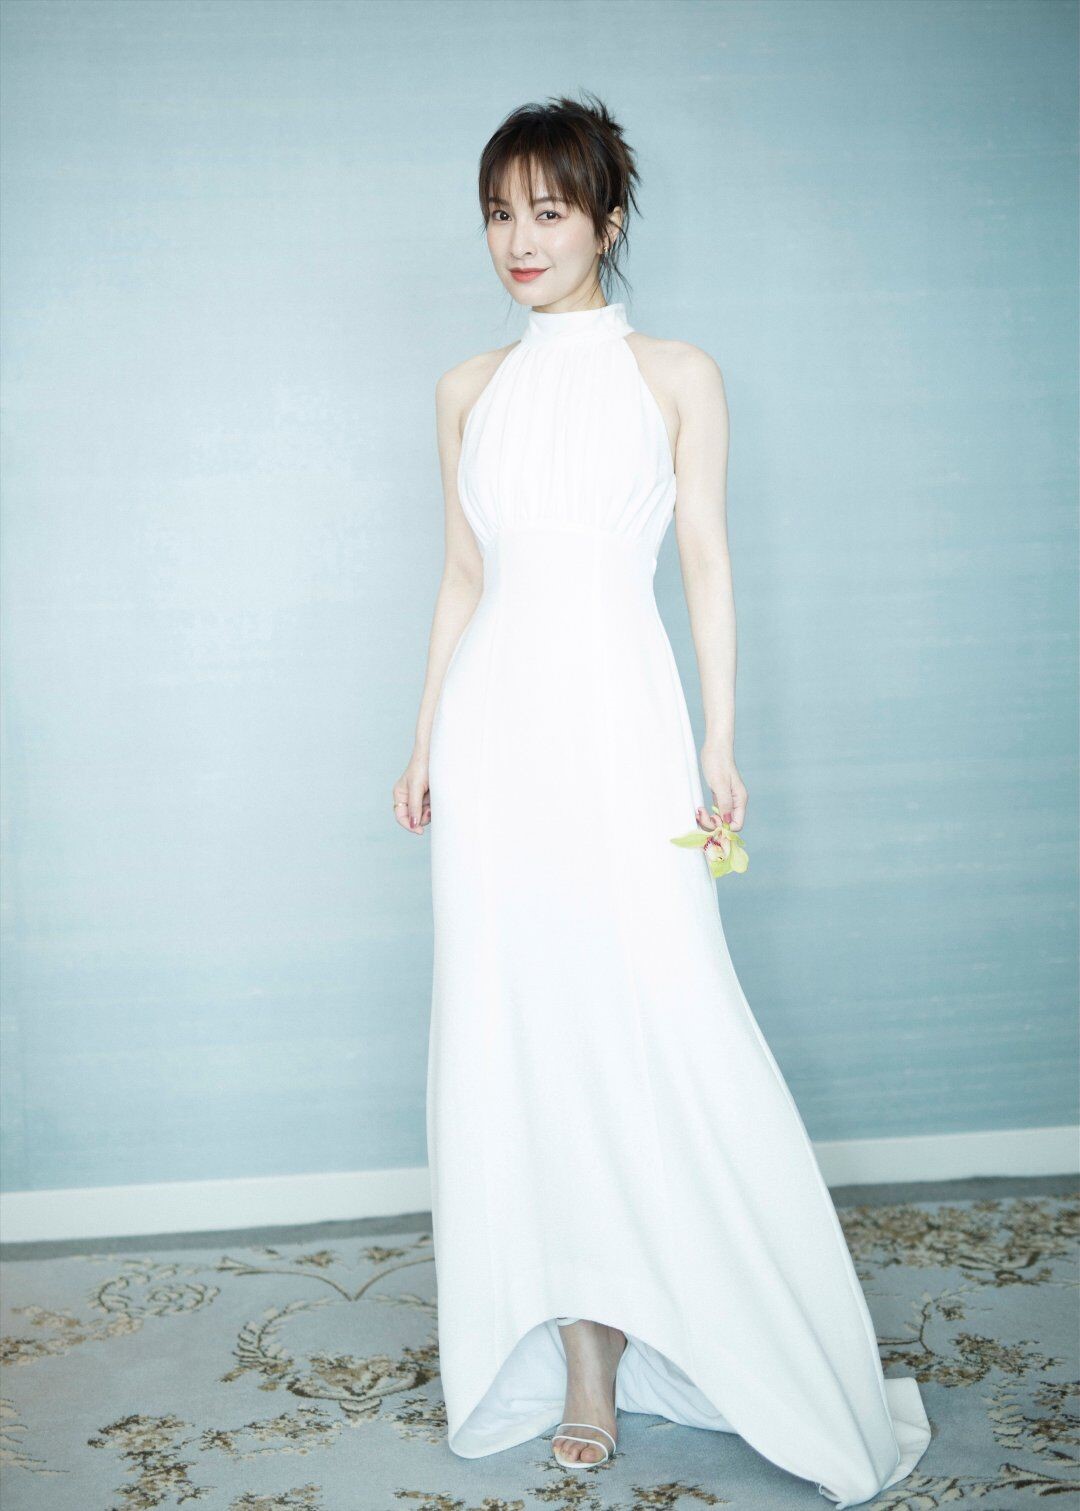 36岁的吴昕穿衣大逆袭,纯白色礼服显优雅年轻,看起来真像20来岁